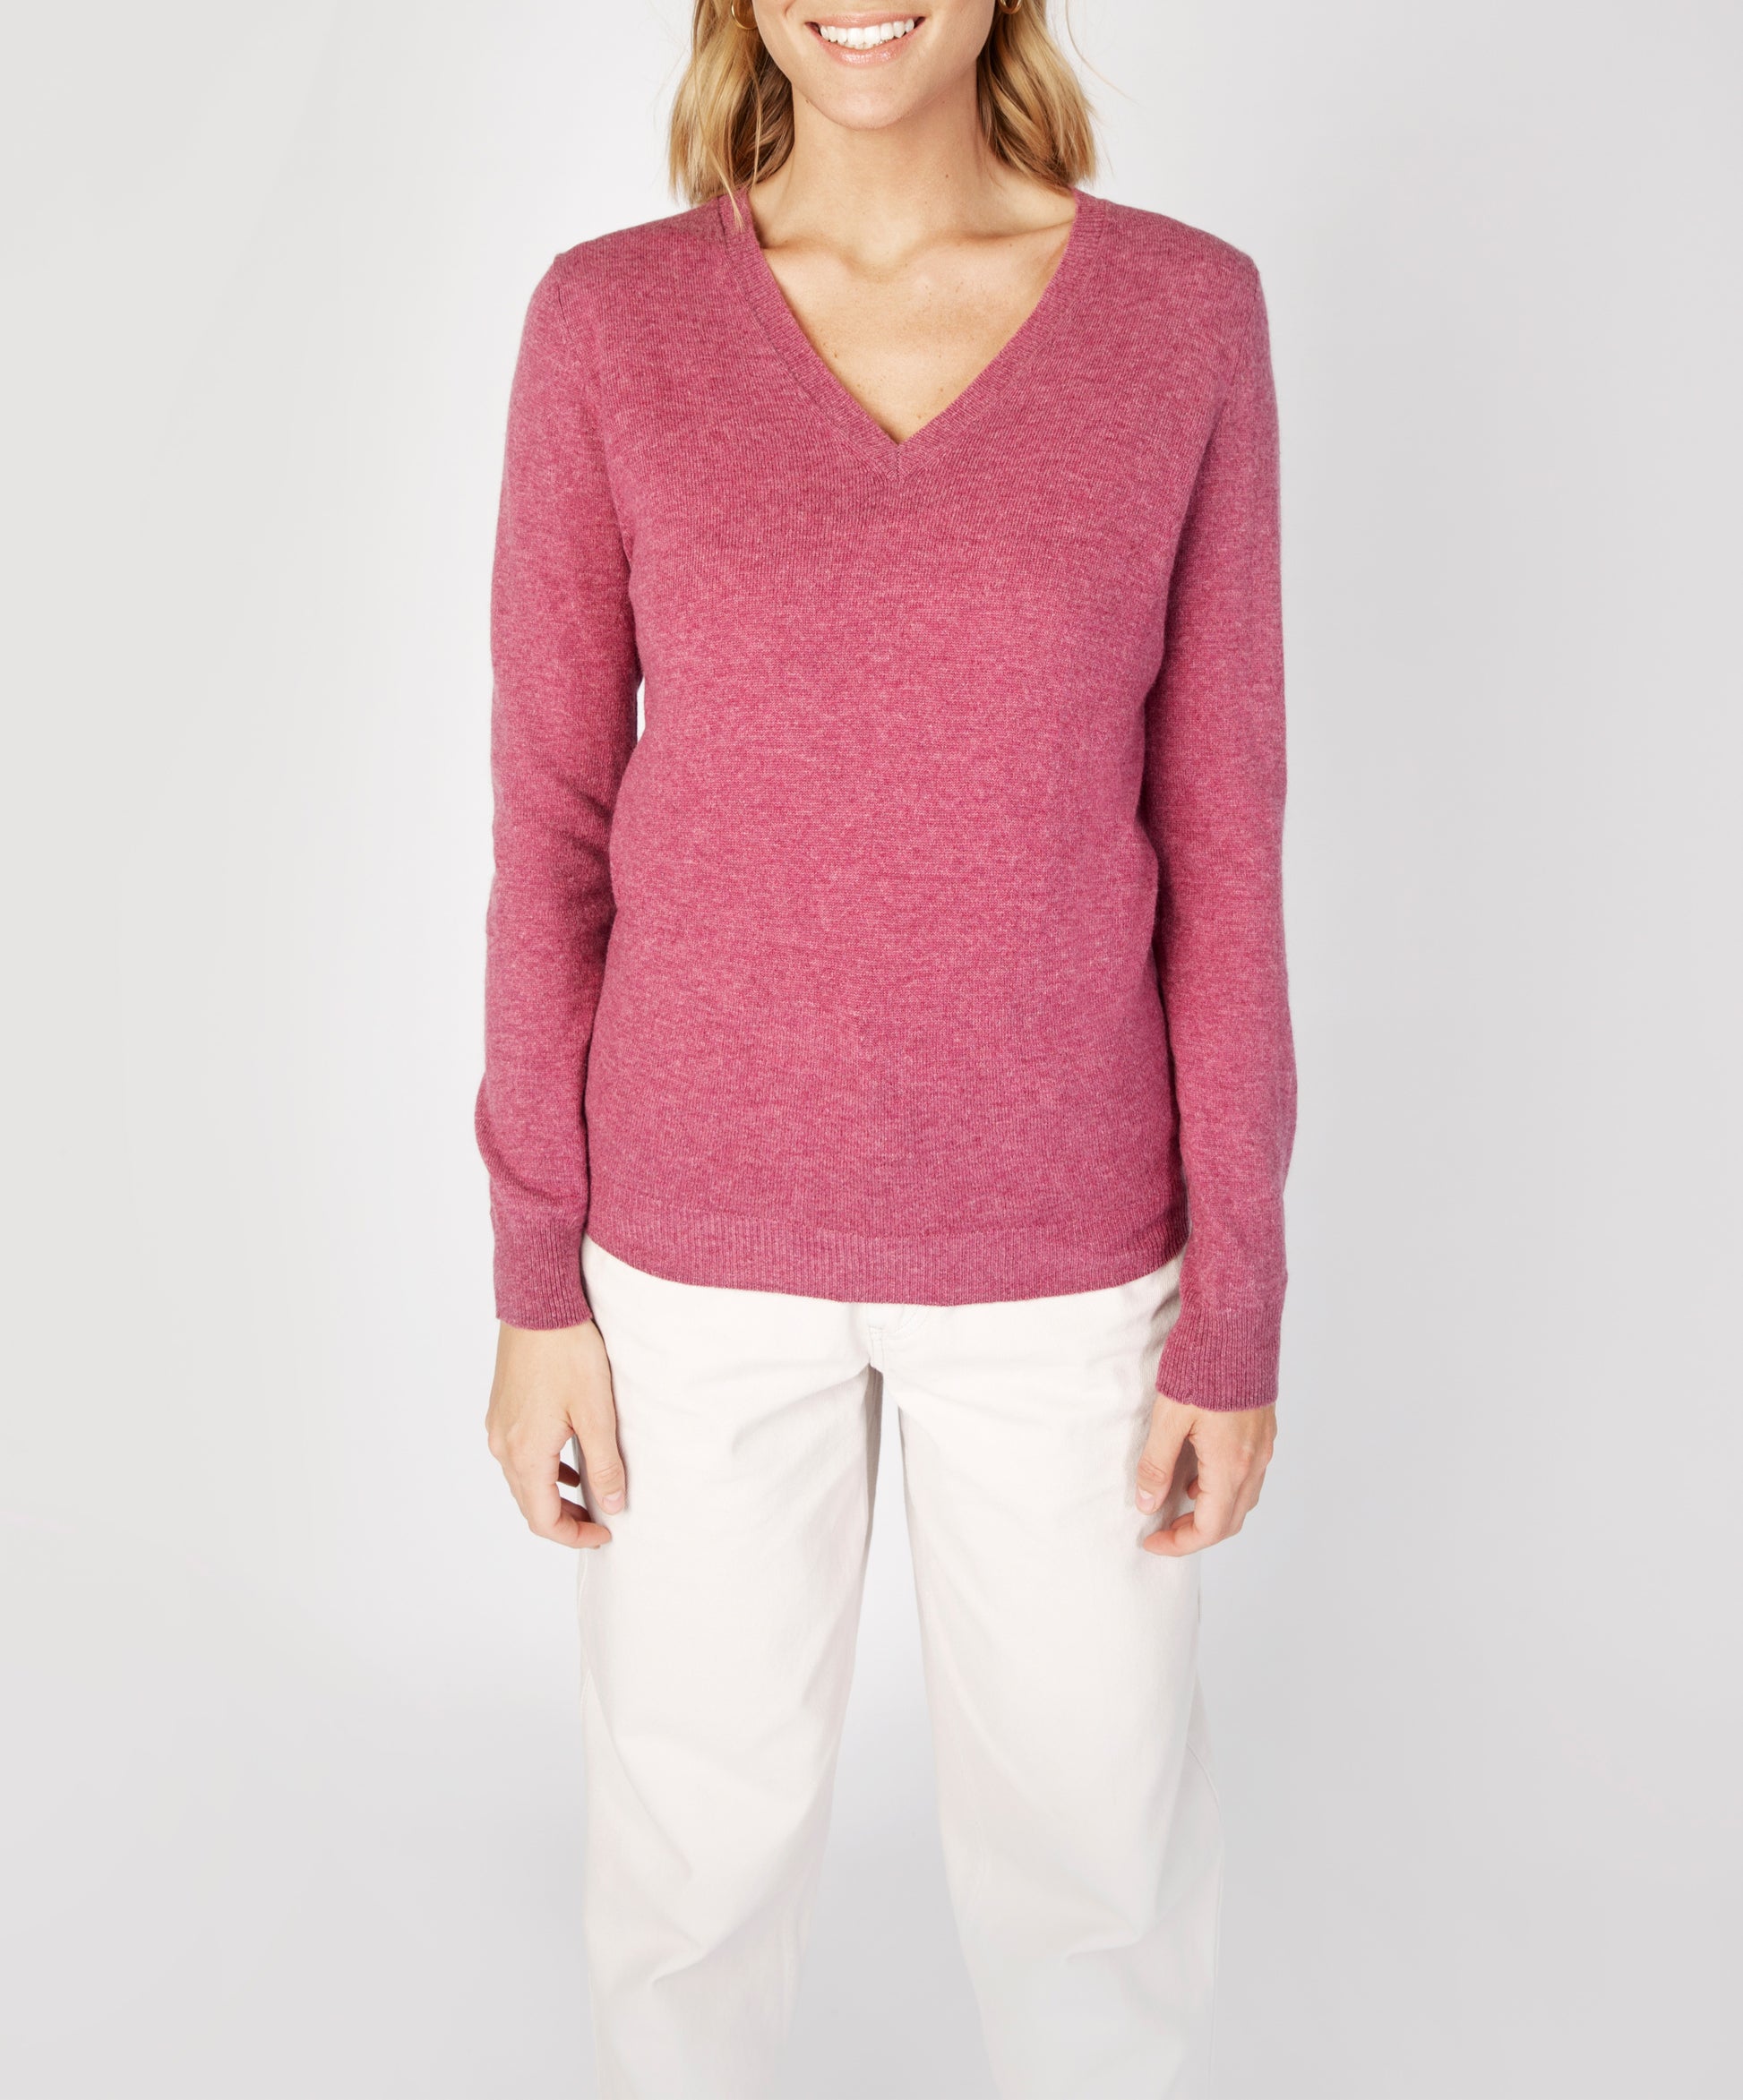 IrelandsEye Knitwear Luxe Touch Wool V Neck Sweater Dried Rose